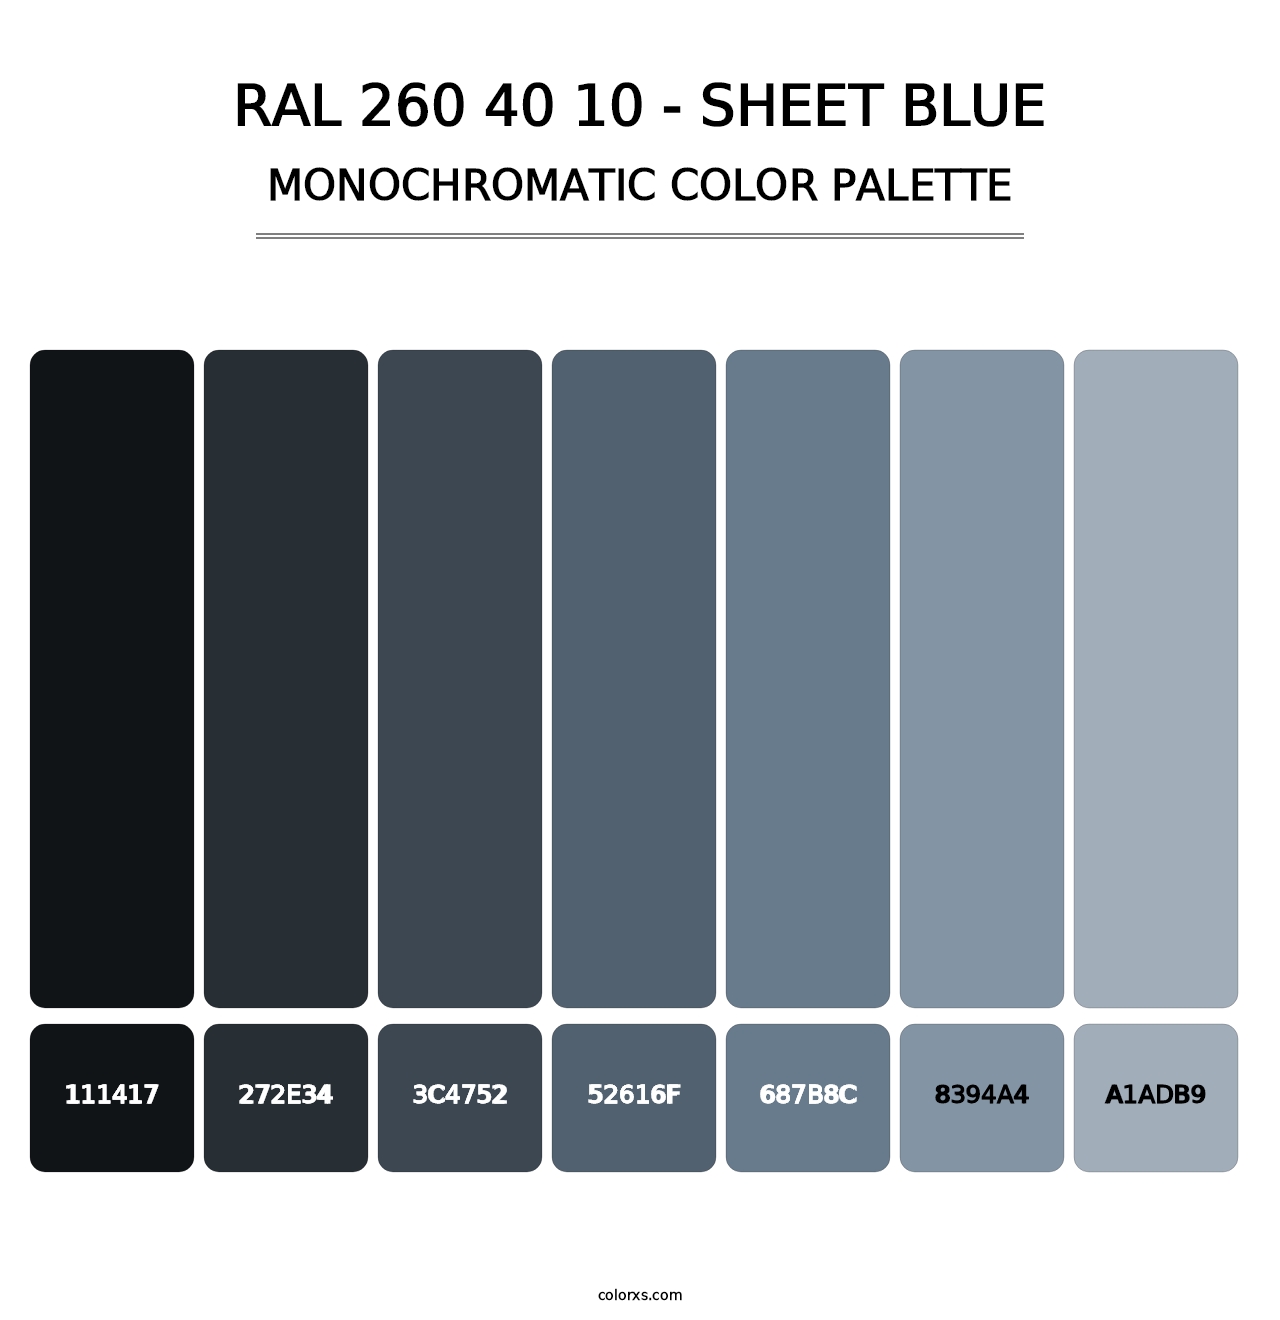 RAL 260 40 10 - Sheet Blue - Monochromatic Color Palette